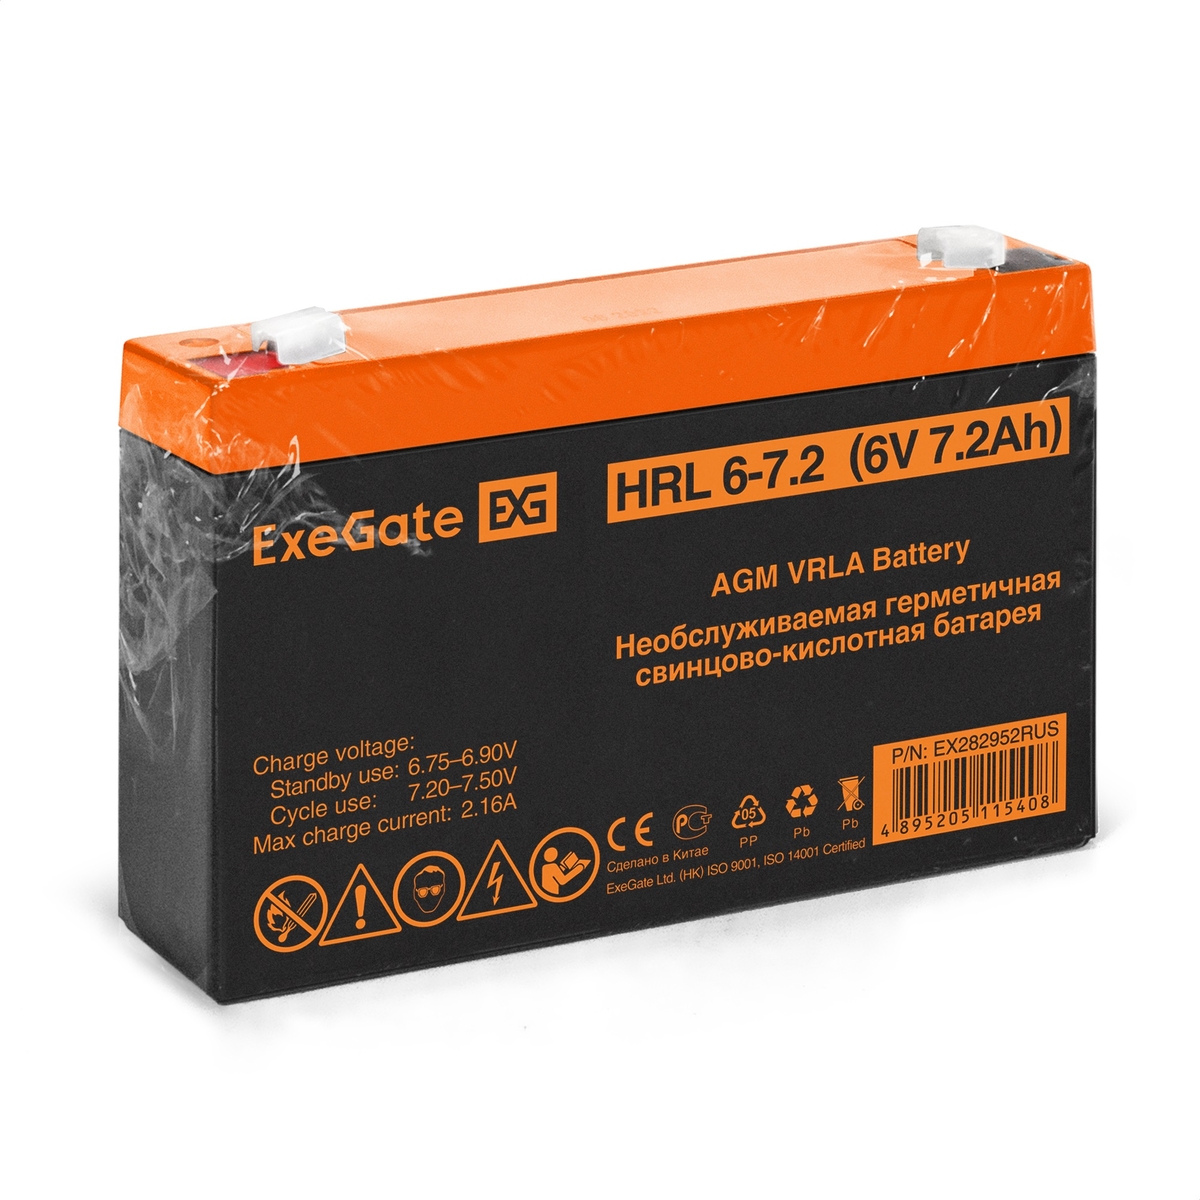 Battery ExeGate HRL 6-7.2